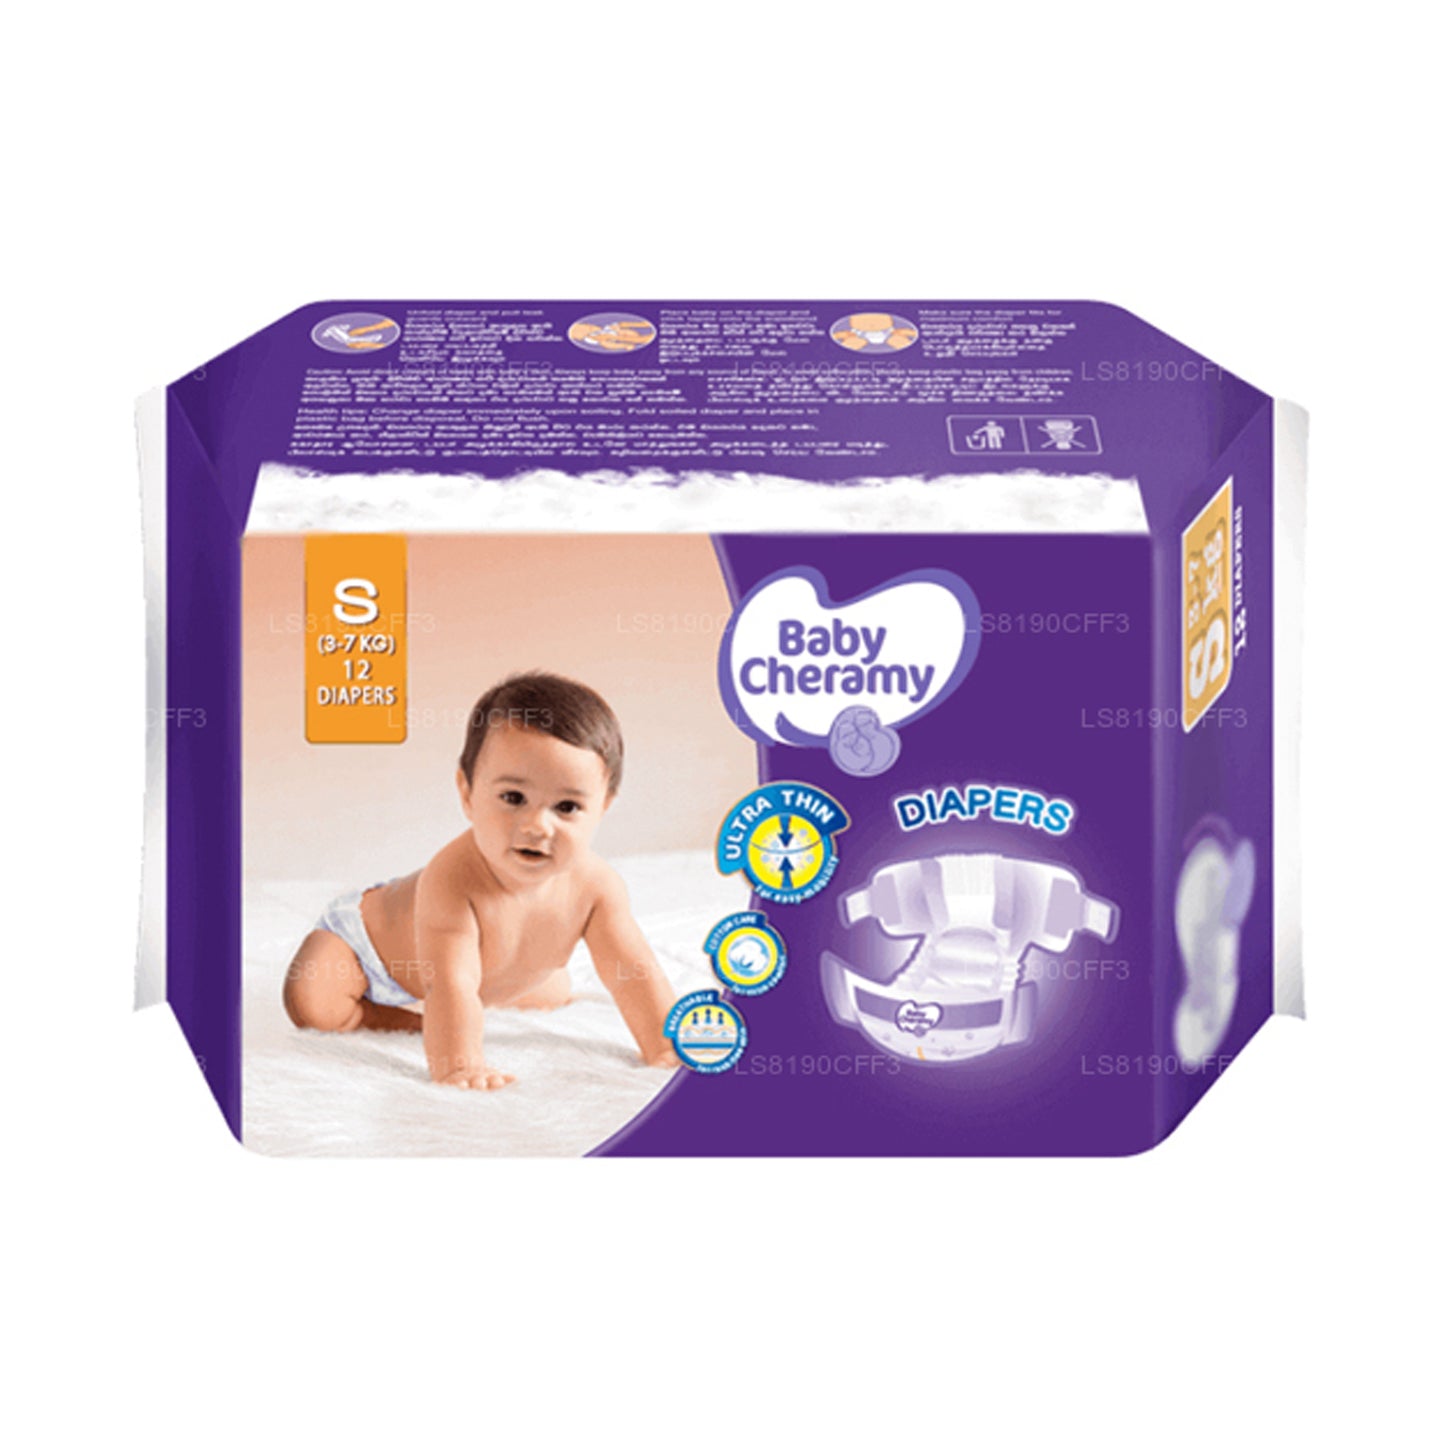 Baby Cheramy Baby Diapers (12 Pack)